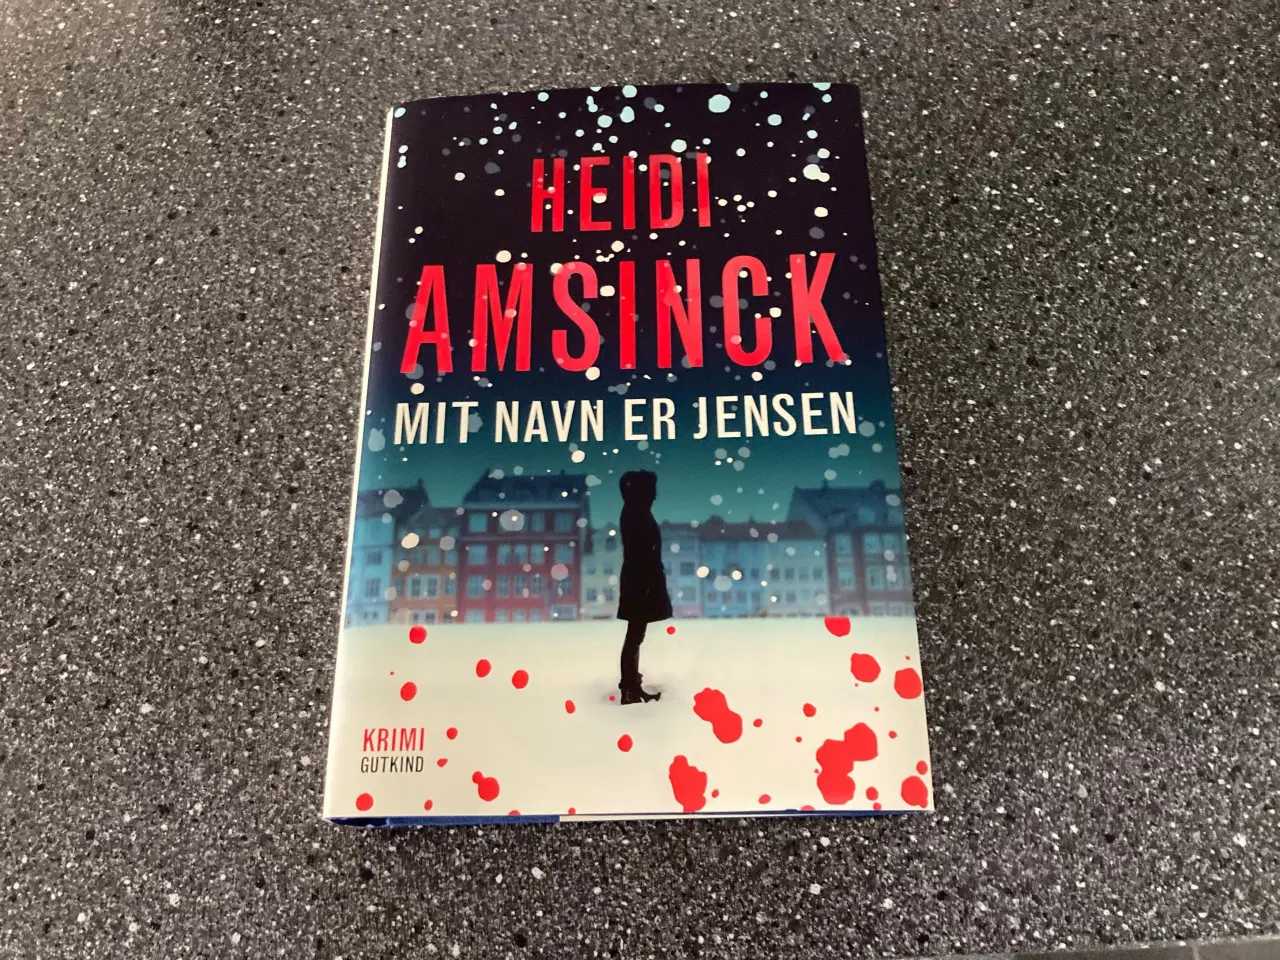 Billede 1 - Mit navn er Jensen en bog af Heidi Amsinsk